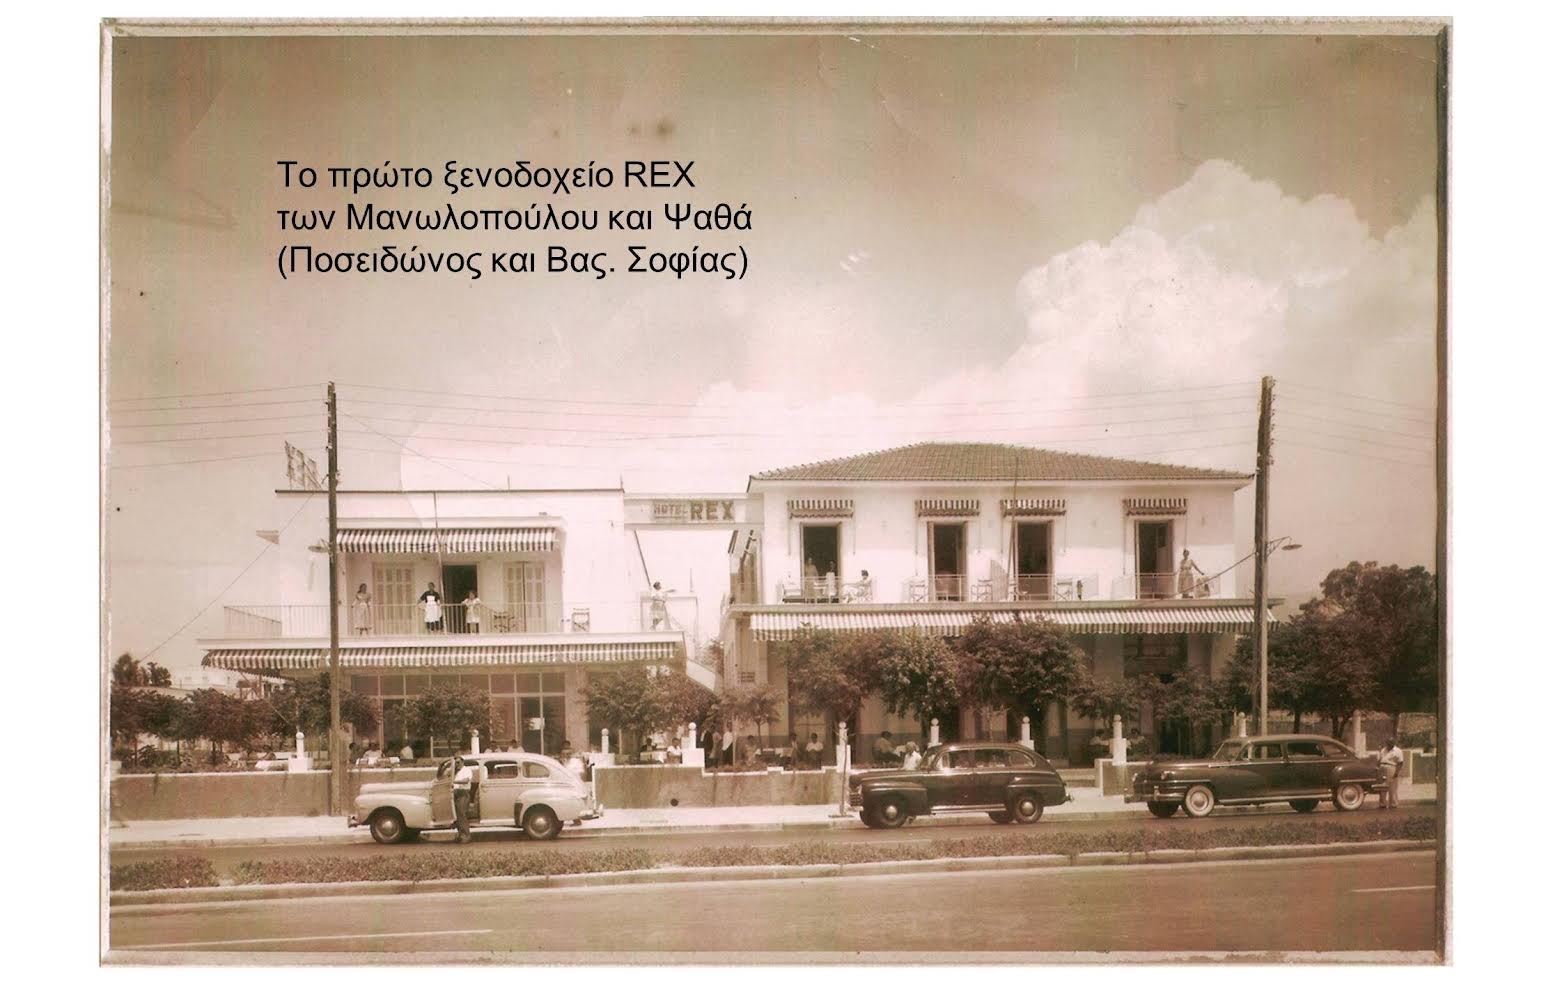 Το πρώτο ξενοδοχείο στο Καλαμάκι βρισκόταν στη συμβολή των Λεωφ.Ποσειδώνος και Καλαμακίου